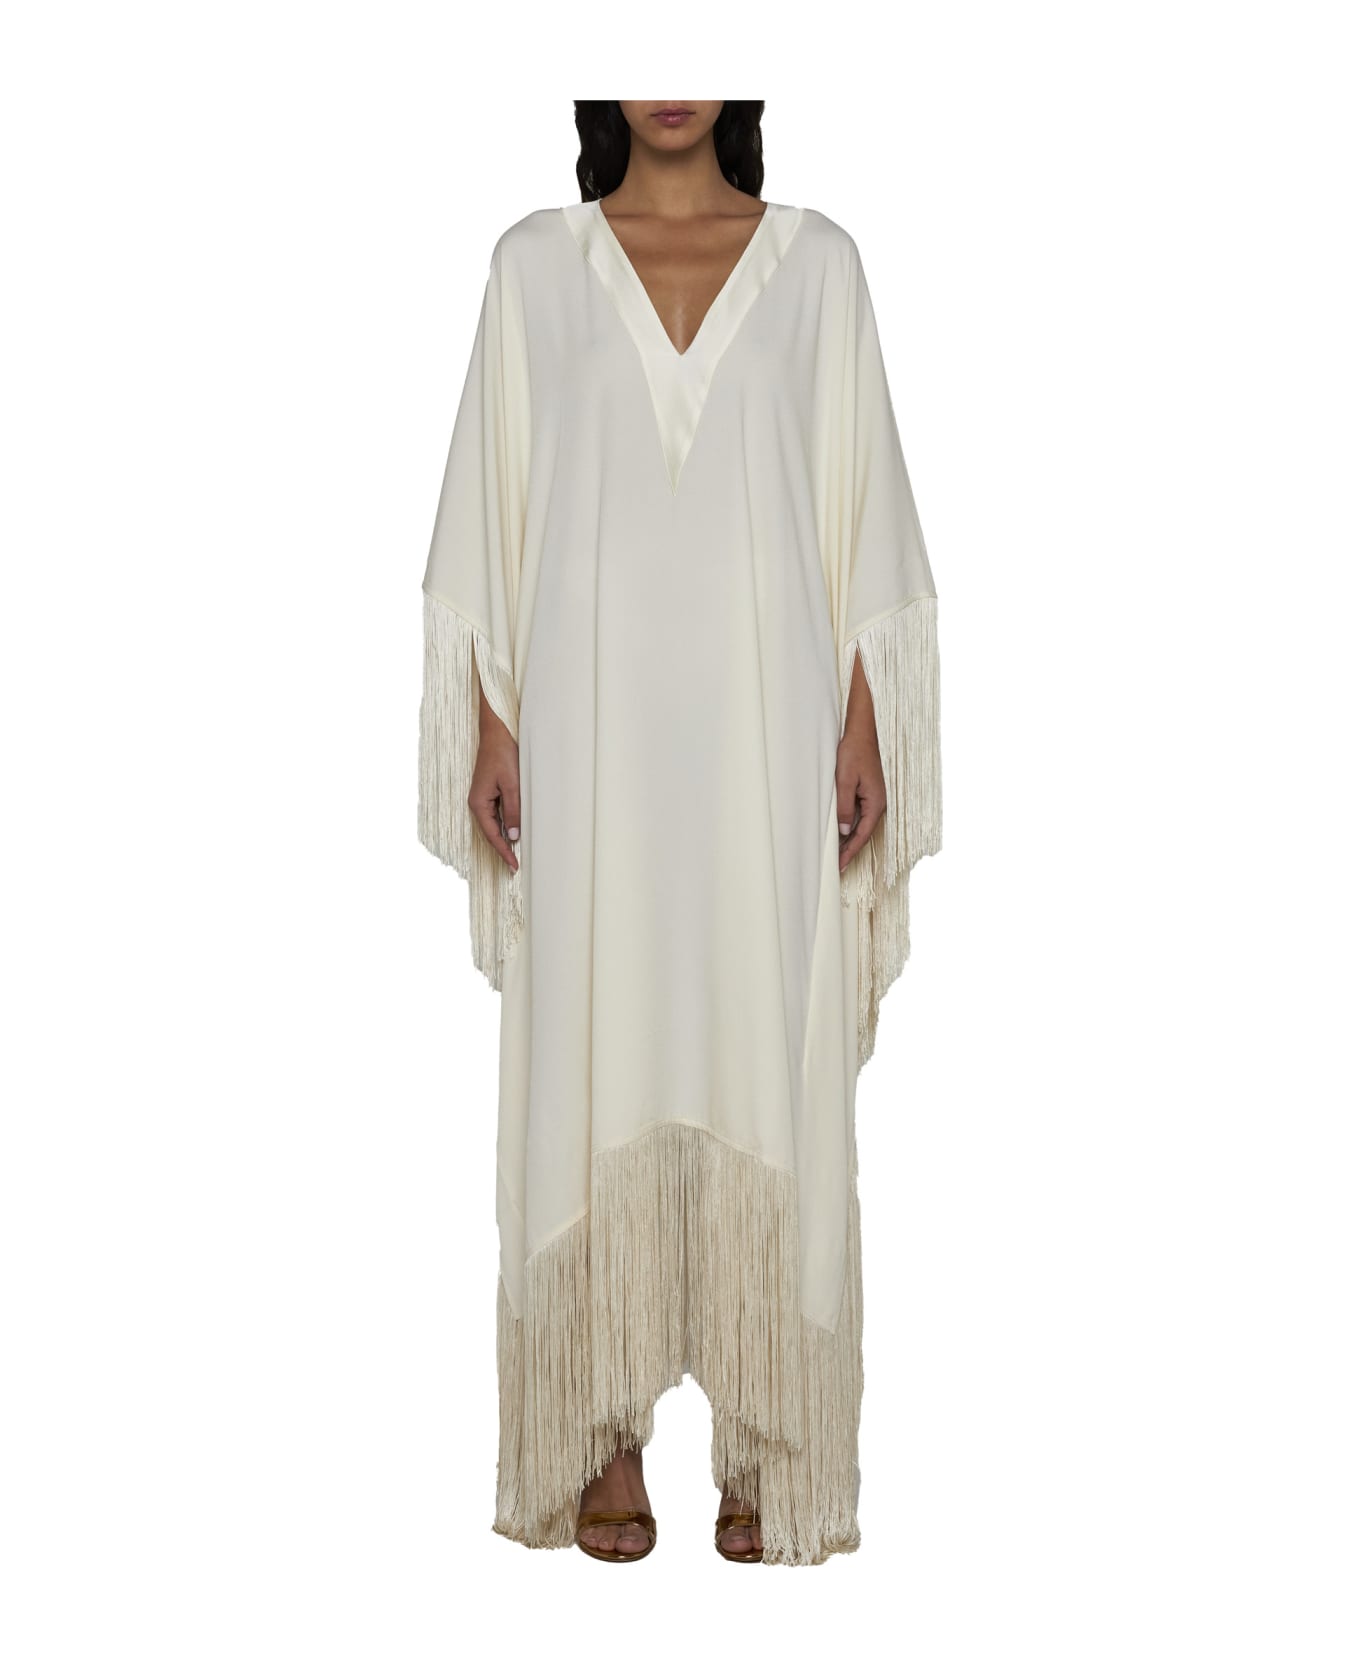 Taller Marmo Dress - White